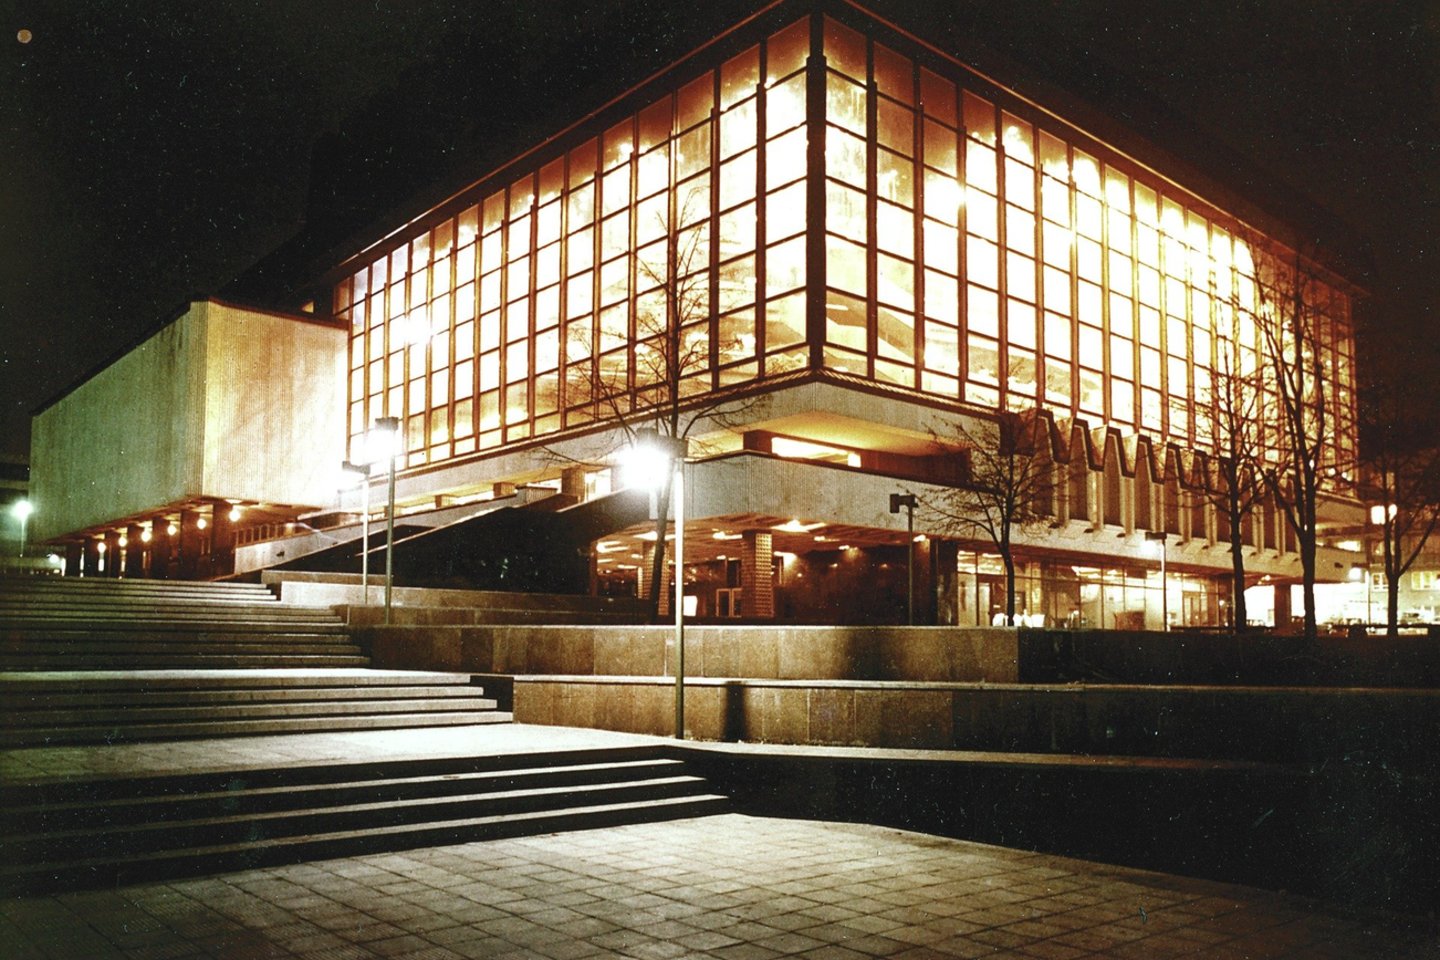 Lietuvos nacionalinis operos ir baleto teatras su įmantriais šviestuvais buvo pastatytas 1974 metais. Tik nedaugelis žino, kad šviestuvai tėra imitacija.<br>Nuotr. iš L.Markejevaitės archyvo